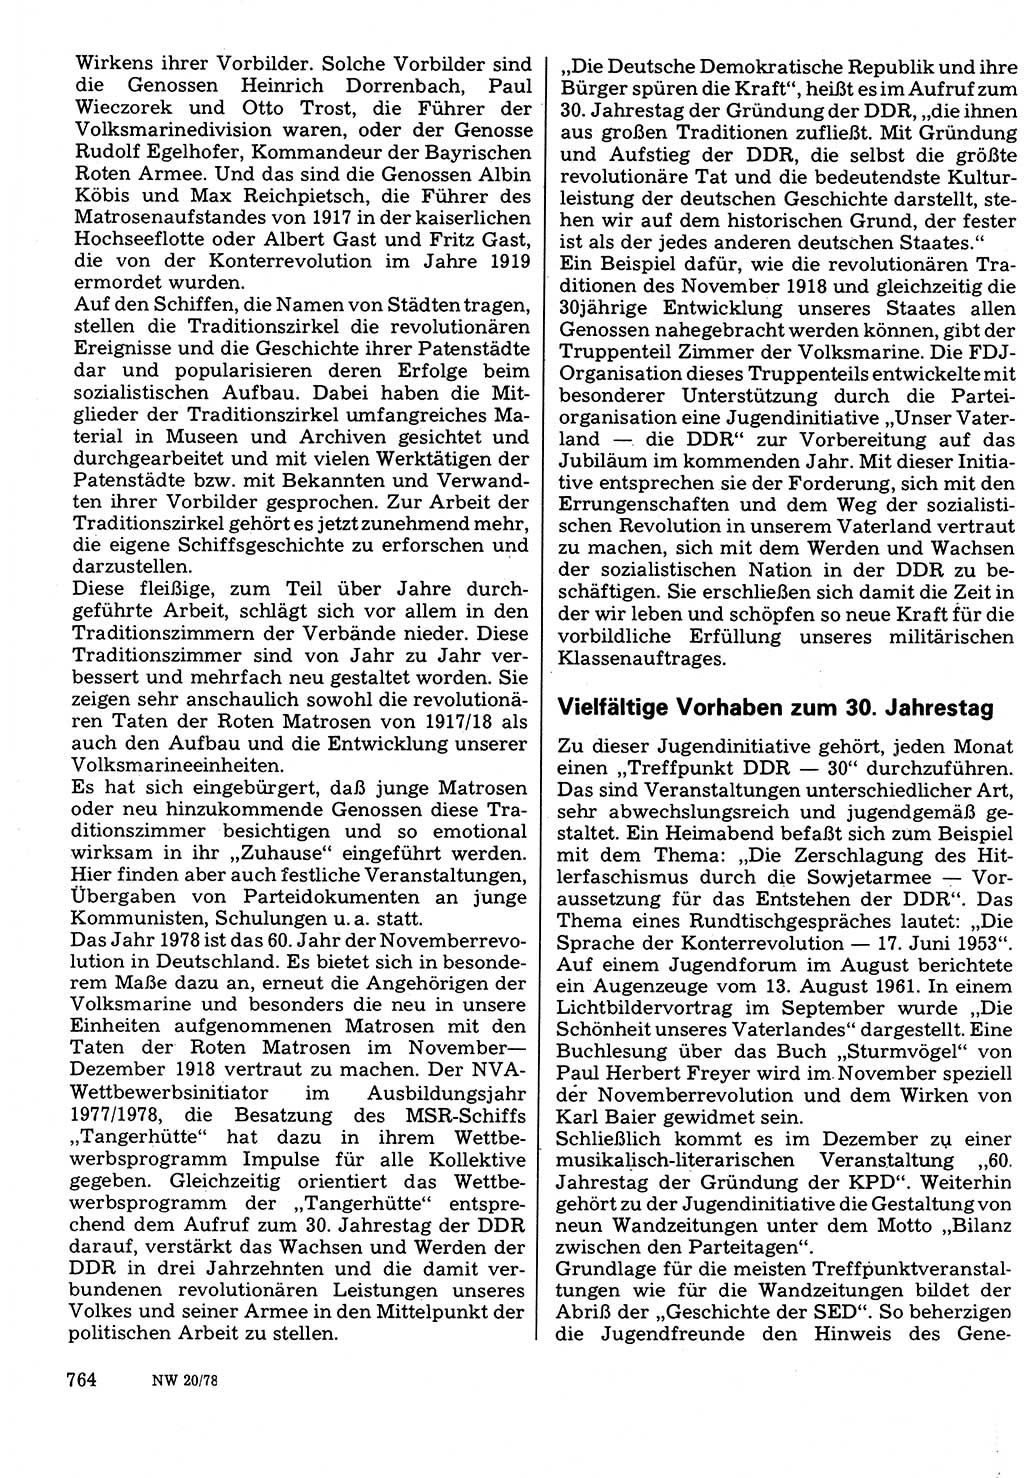 Neuer Weg (NW), Organ des Zentralkomitees (ZK) der SED (Sozialistische Einheitspartei Deutschlands) für Fragen des Parteilebens, 33. Jahrgang [Deutsche Demokratische Republik (DDR)] 1978, Seite 764 (NW ZK SED DDR 1978, S. 764)